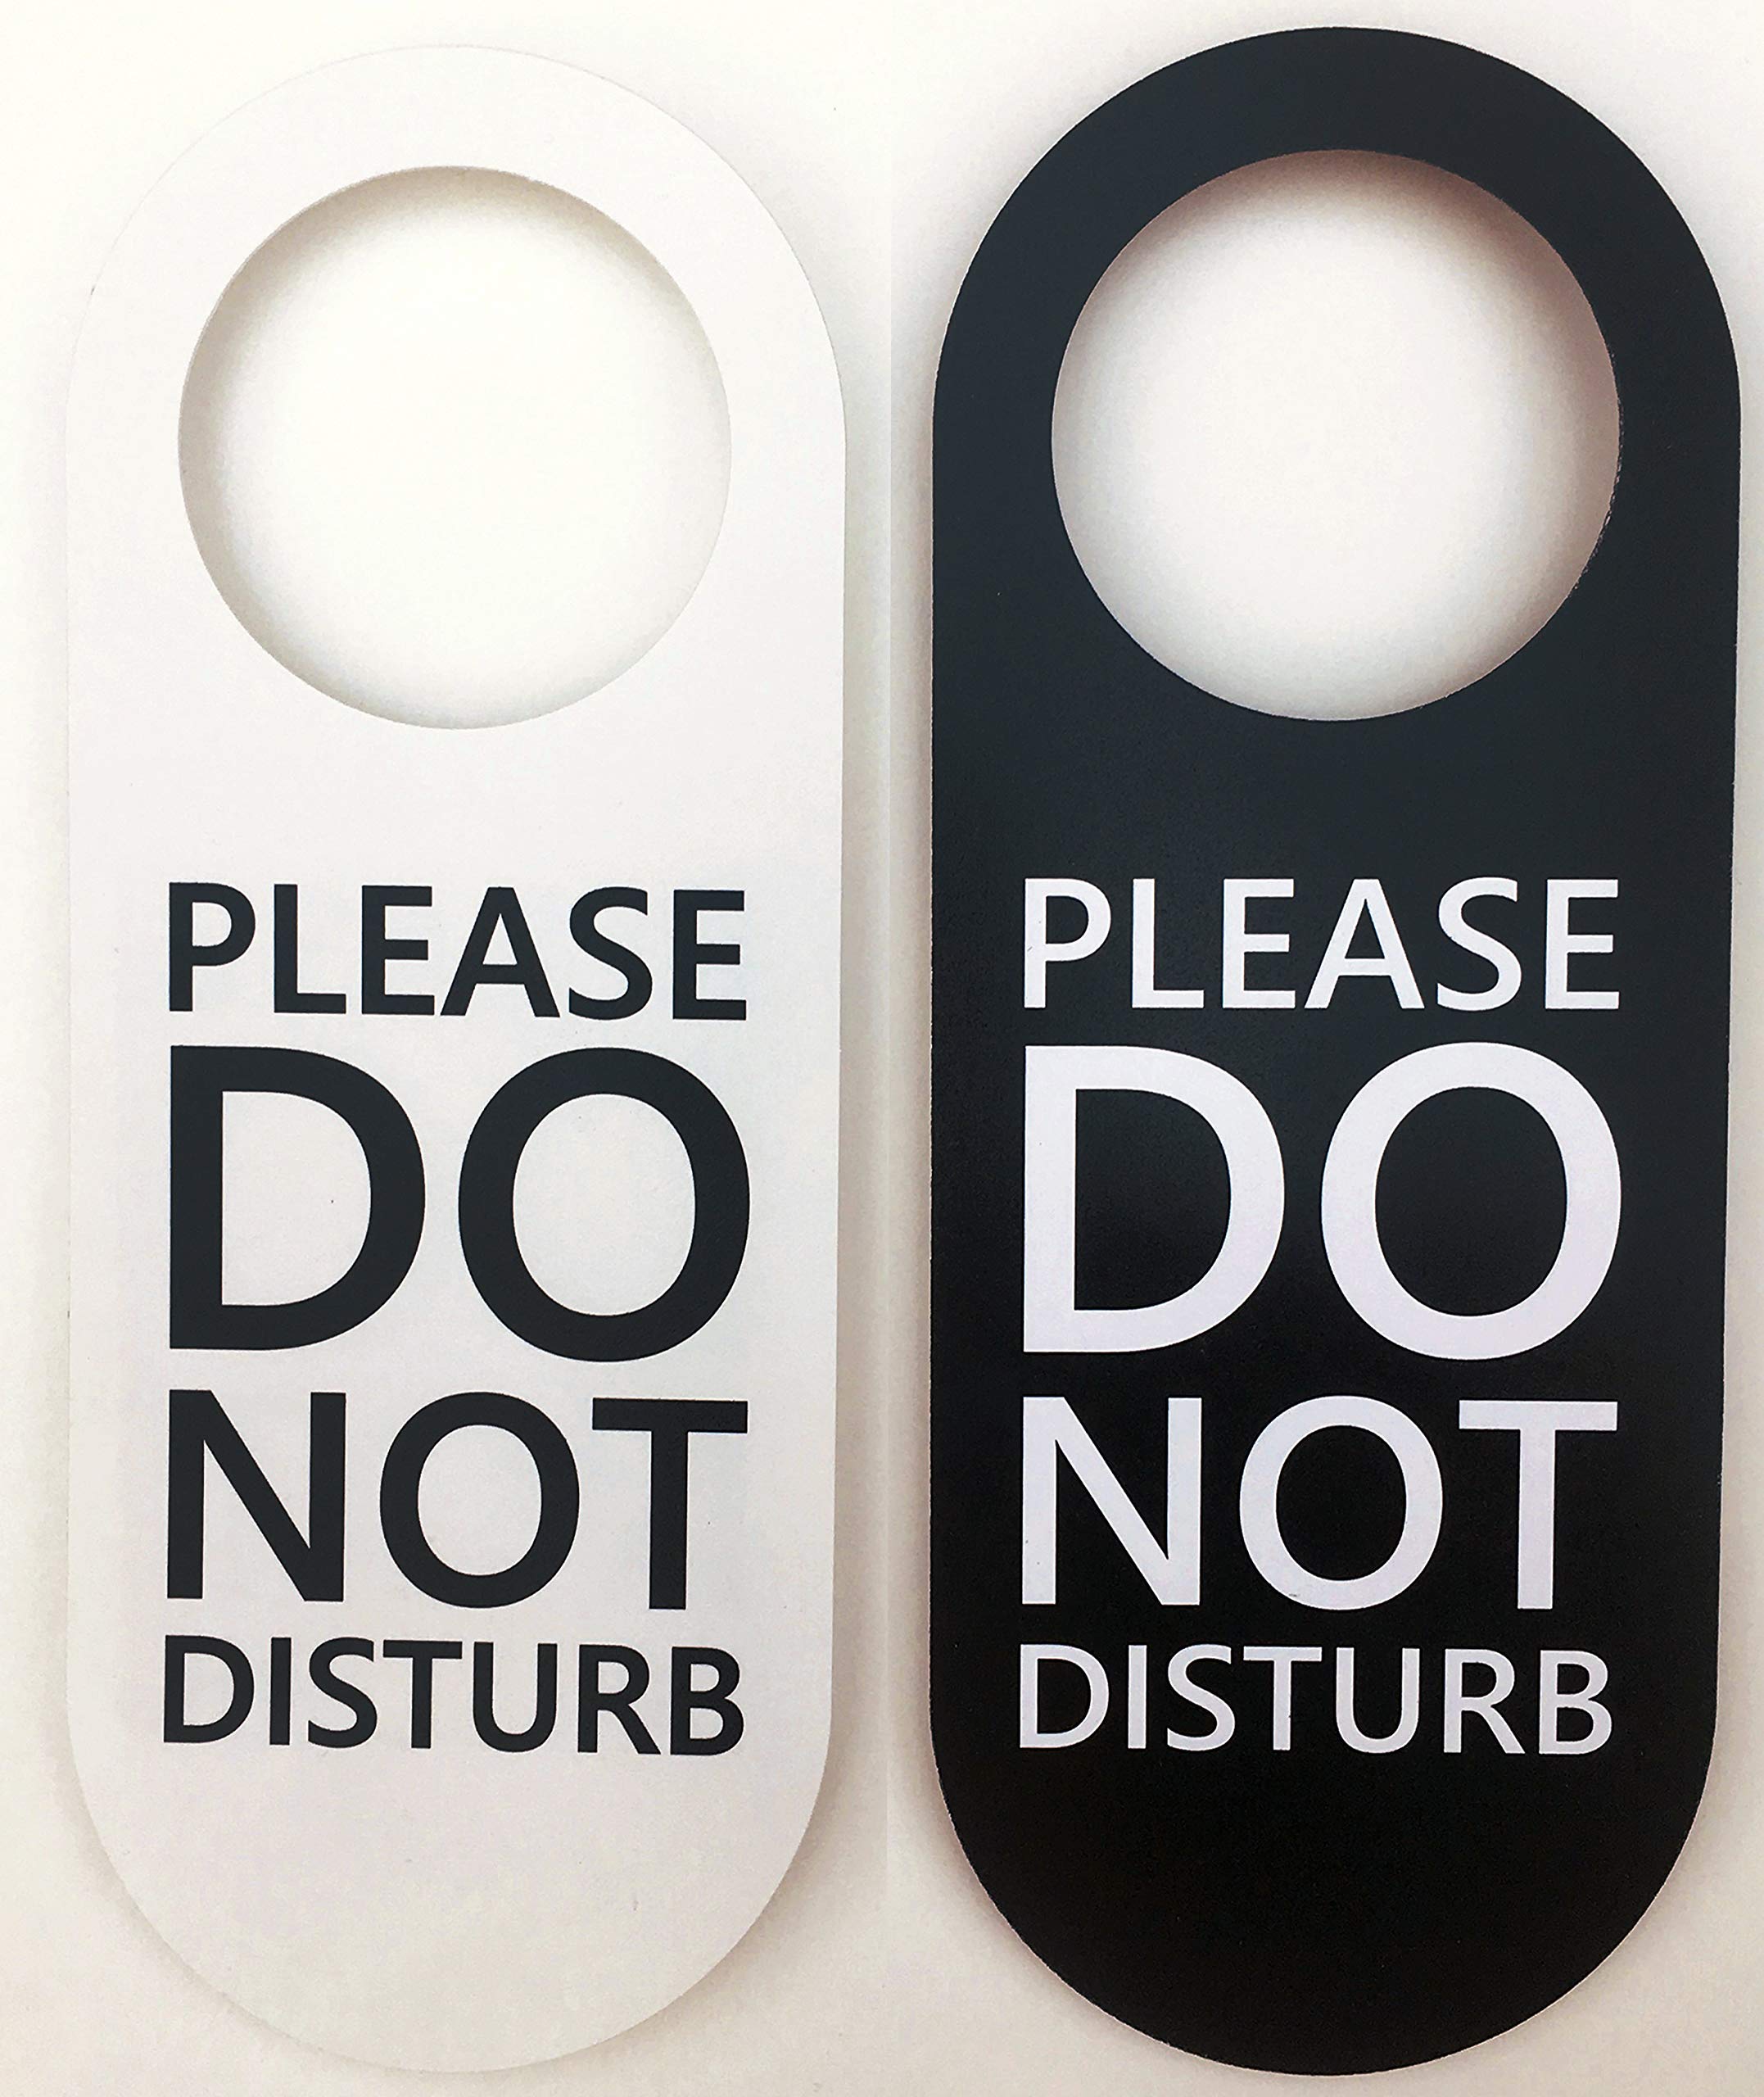 Do not disturb sign on a door